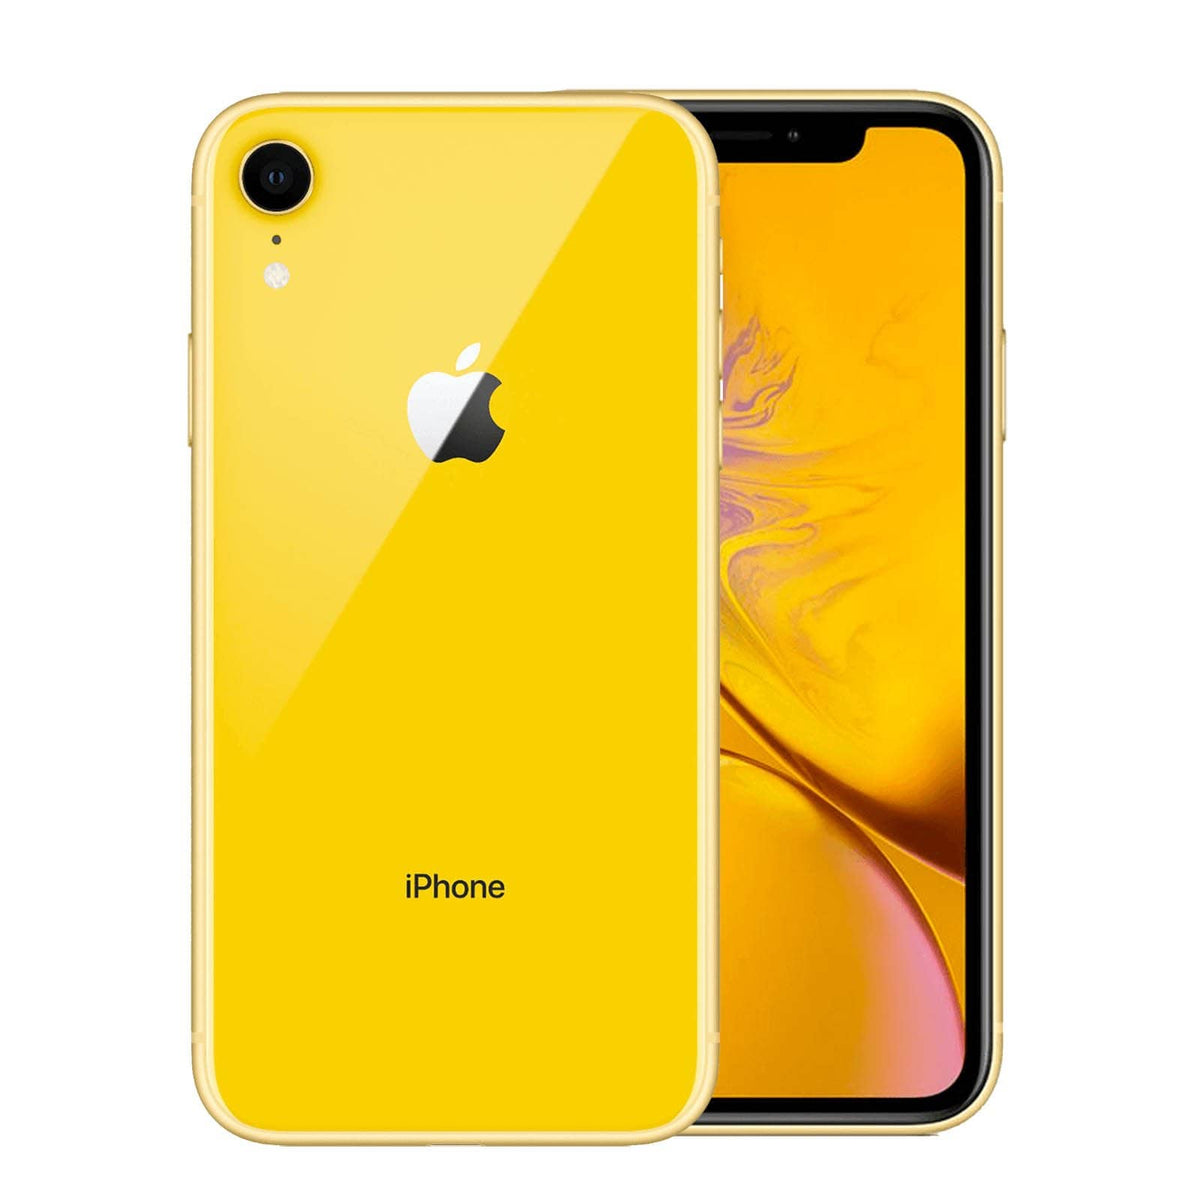 Apple iPhone XR 128 GB - Yellow - Unlocked - Refurbished – Loop-MobileUK